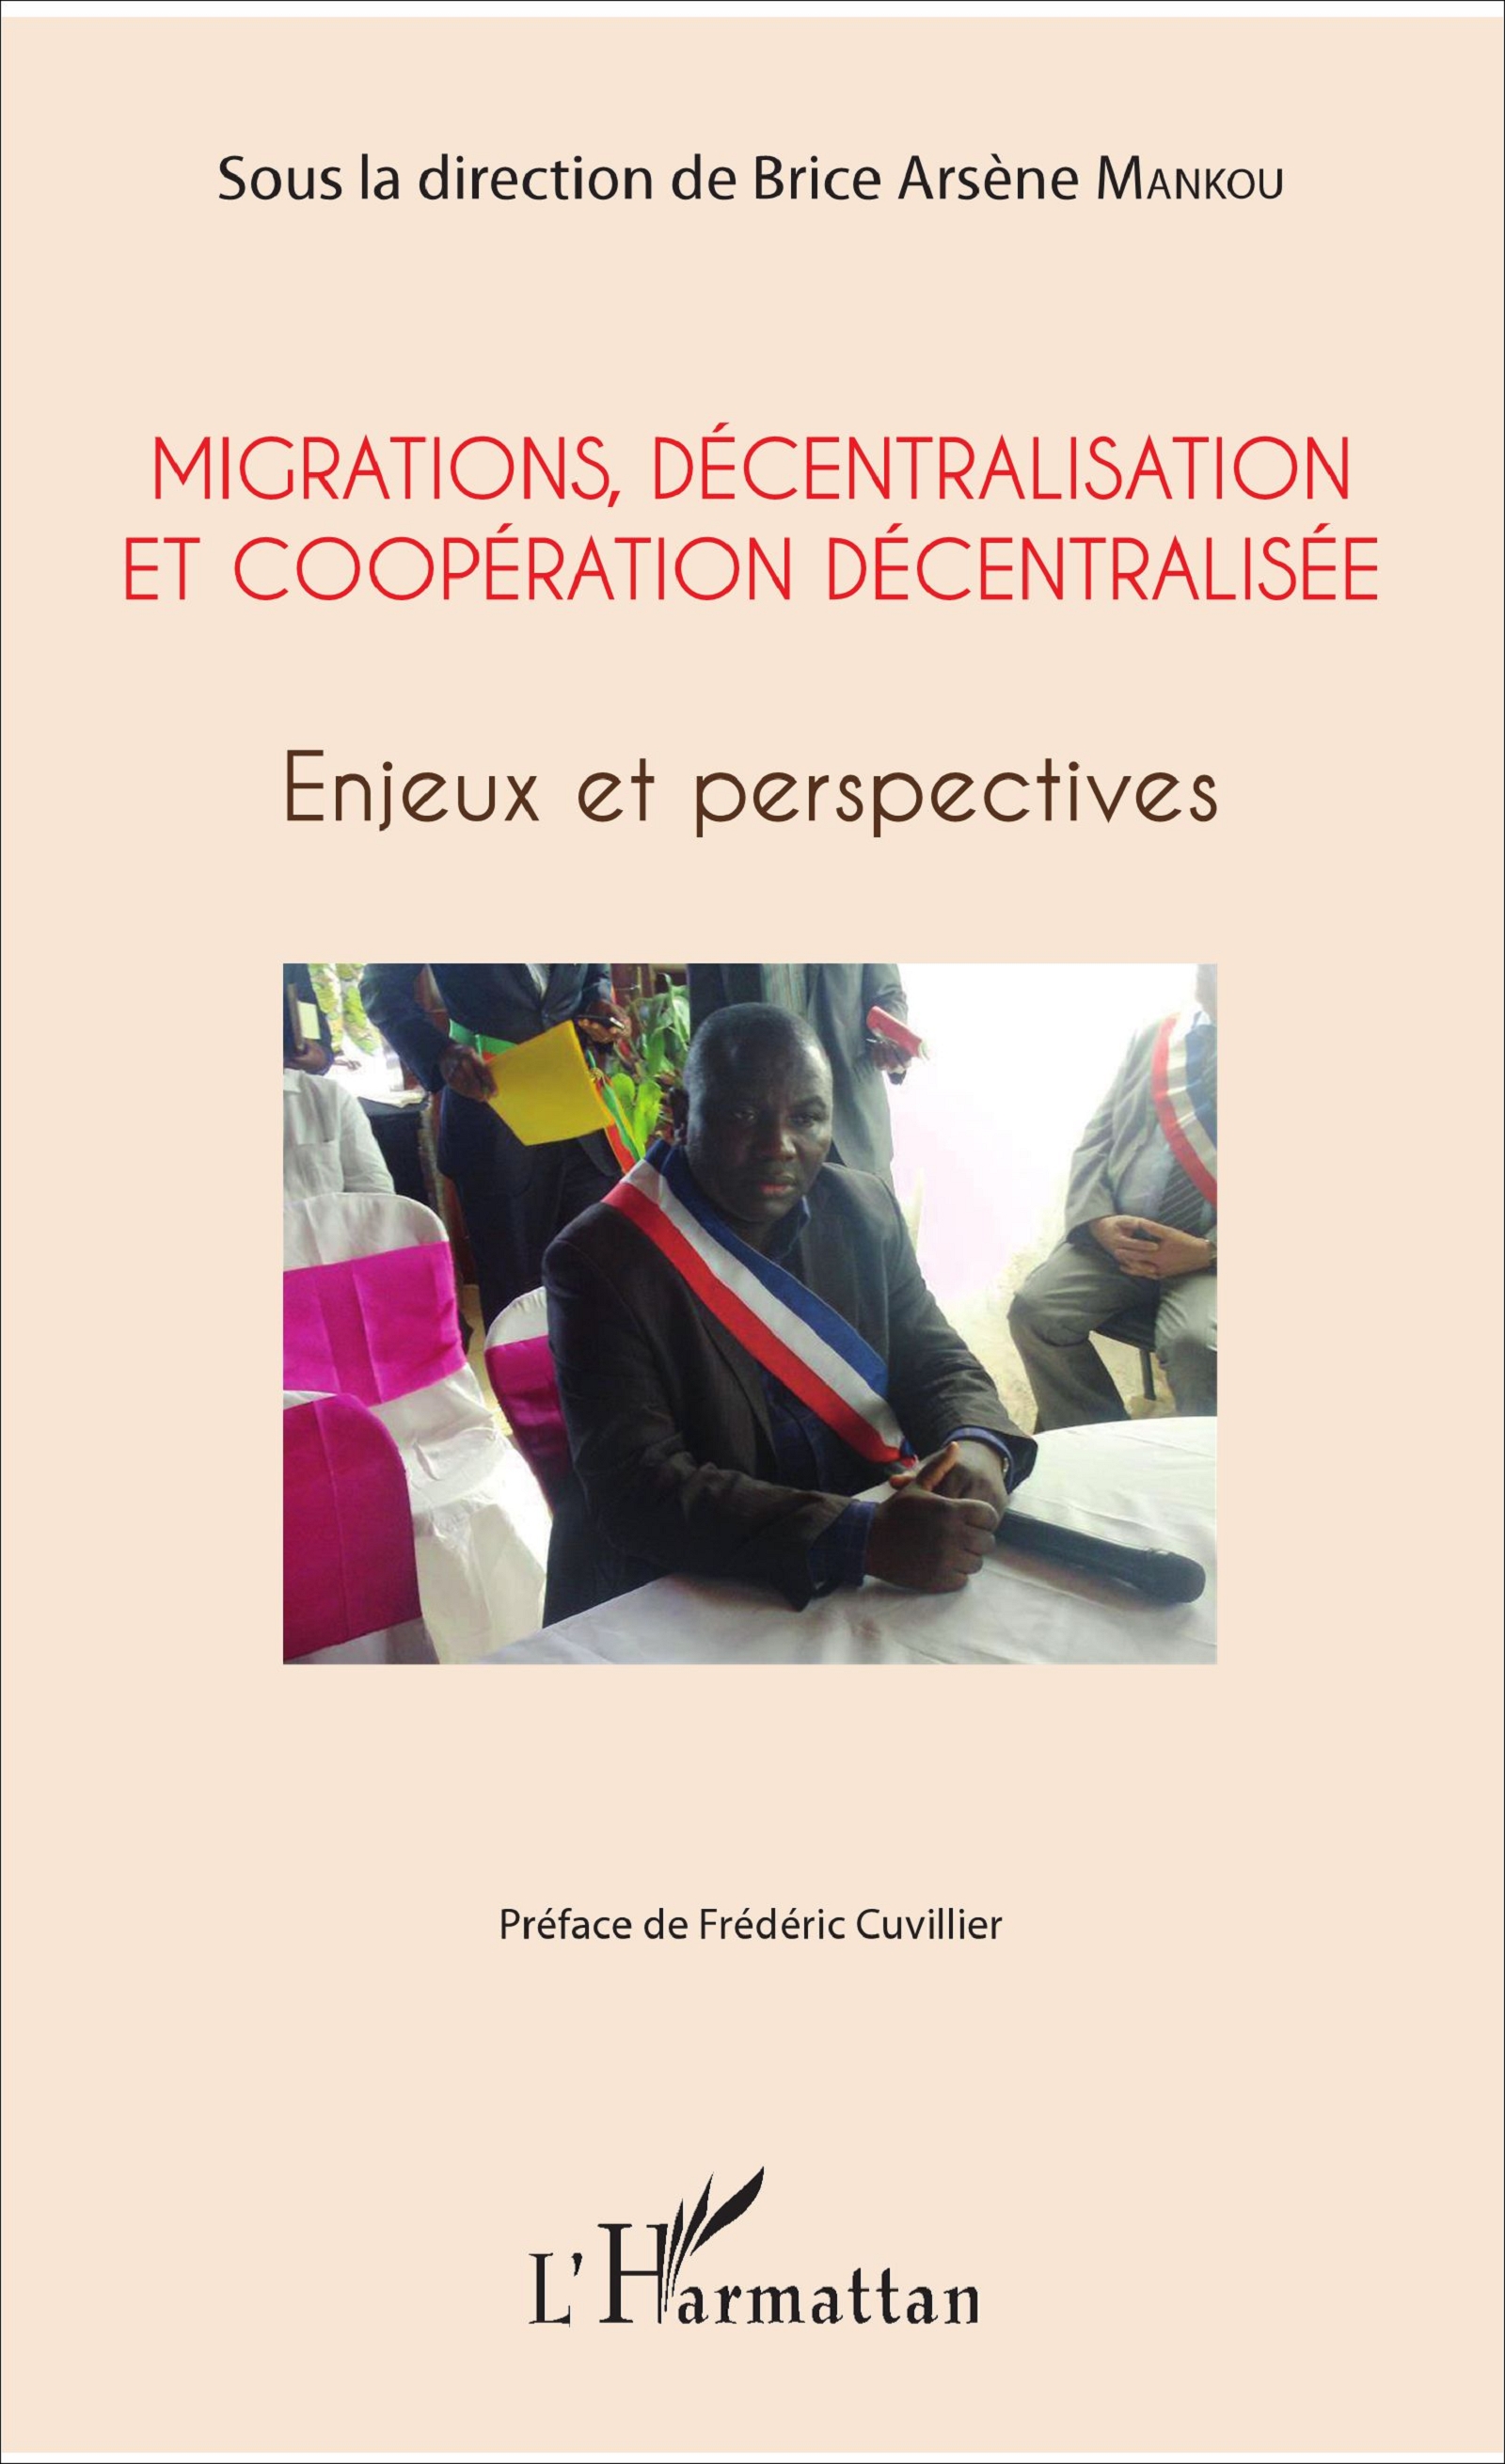 Visuel nouvel ouvrage de Brice Arsène Mankou sur la coopération